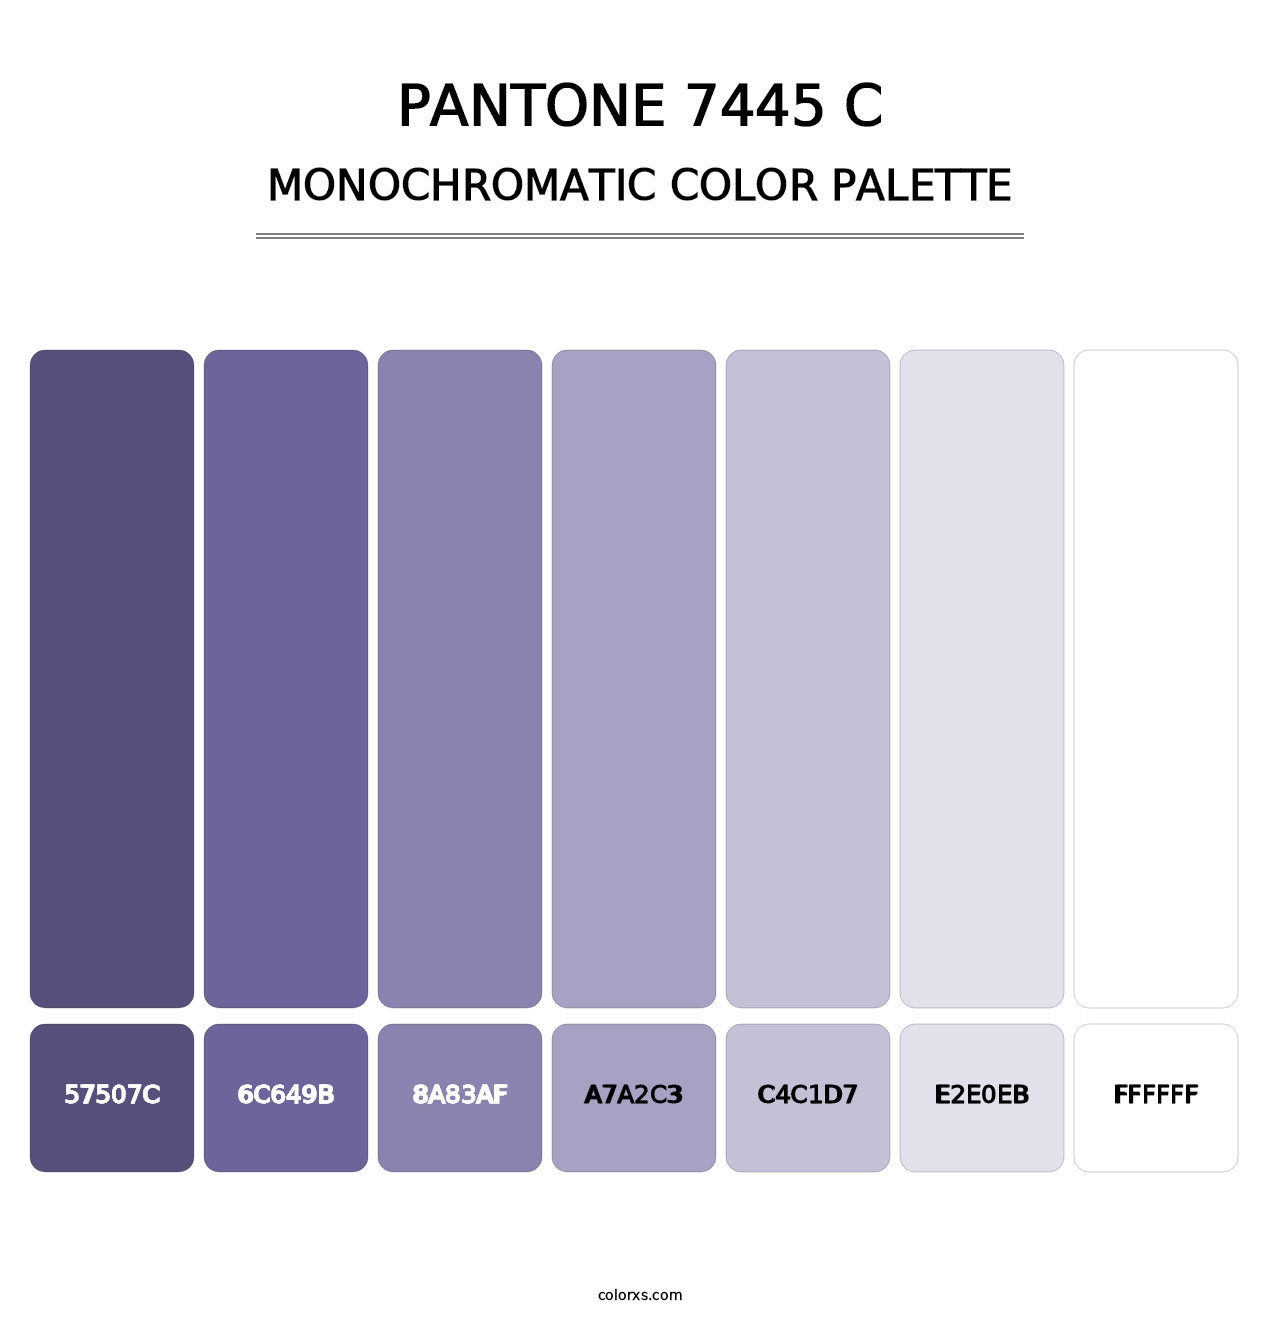 PANTONE 7445 C - Monochromatic Color Palette